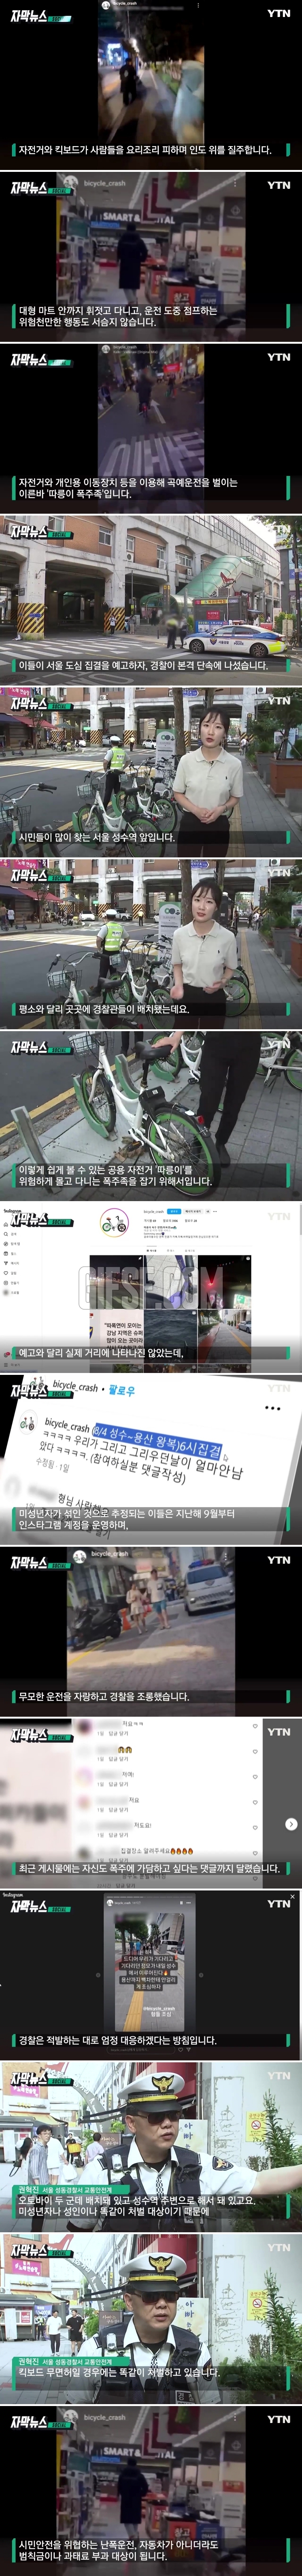 ',따릉이 폭주족',에 경찰까지 배치.SNS 타고 퍼졌다.jpg